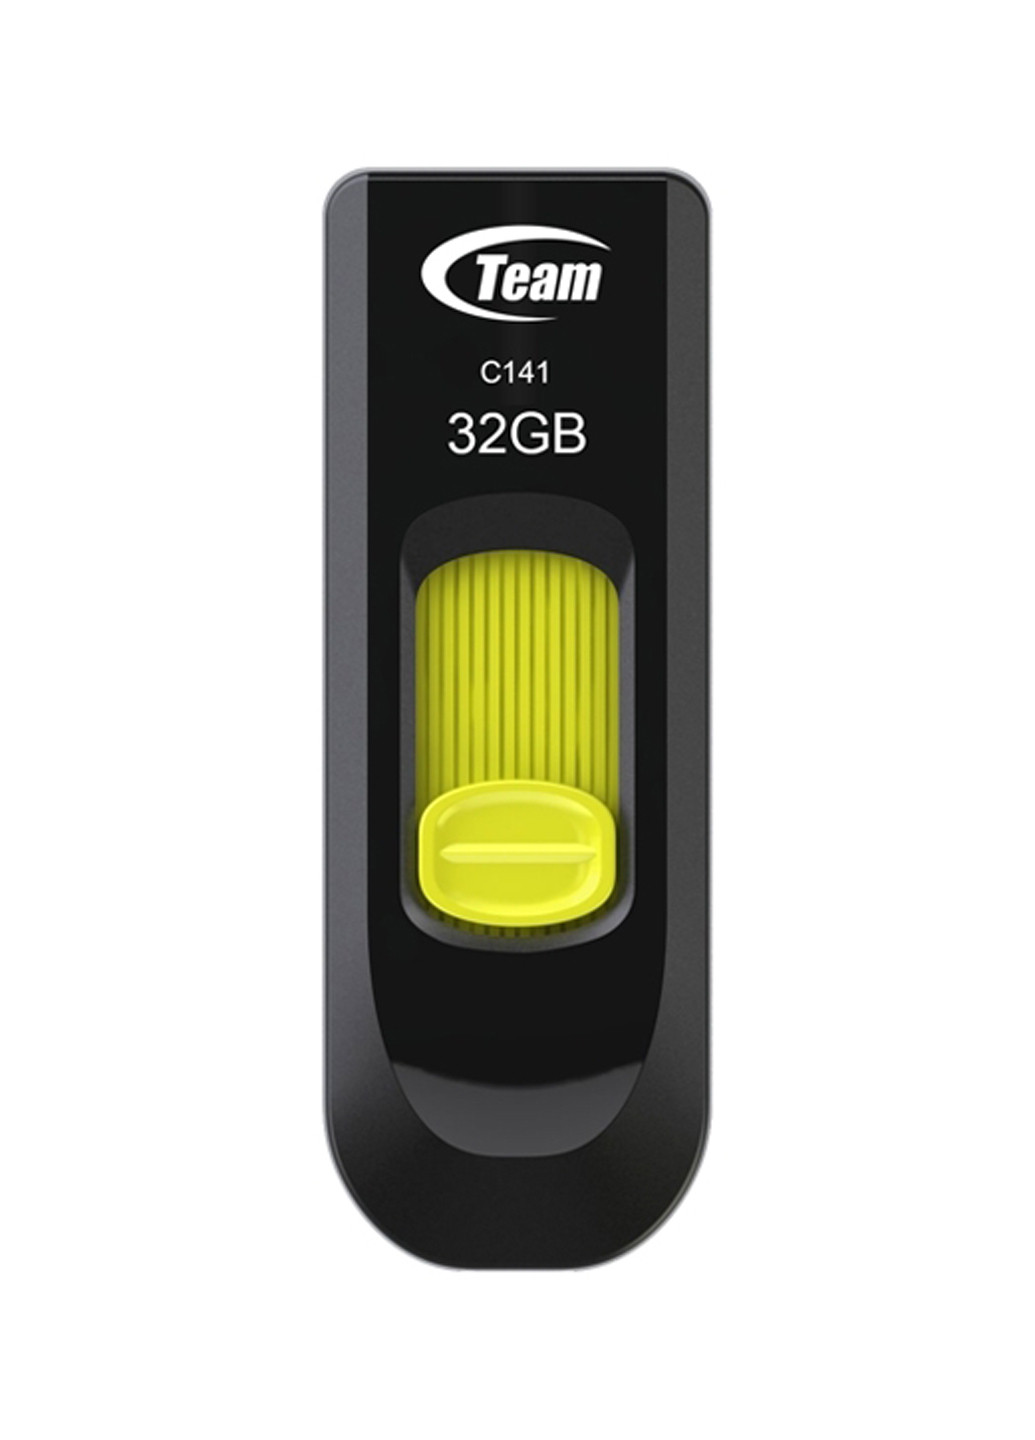 Флеш пам'ять USB C141 32GB Yellow (TC14132GY01) Team флеш память usb team c141 32gb yellow (tc14132gy01) (134201667)